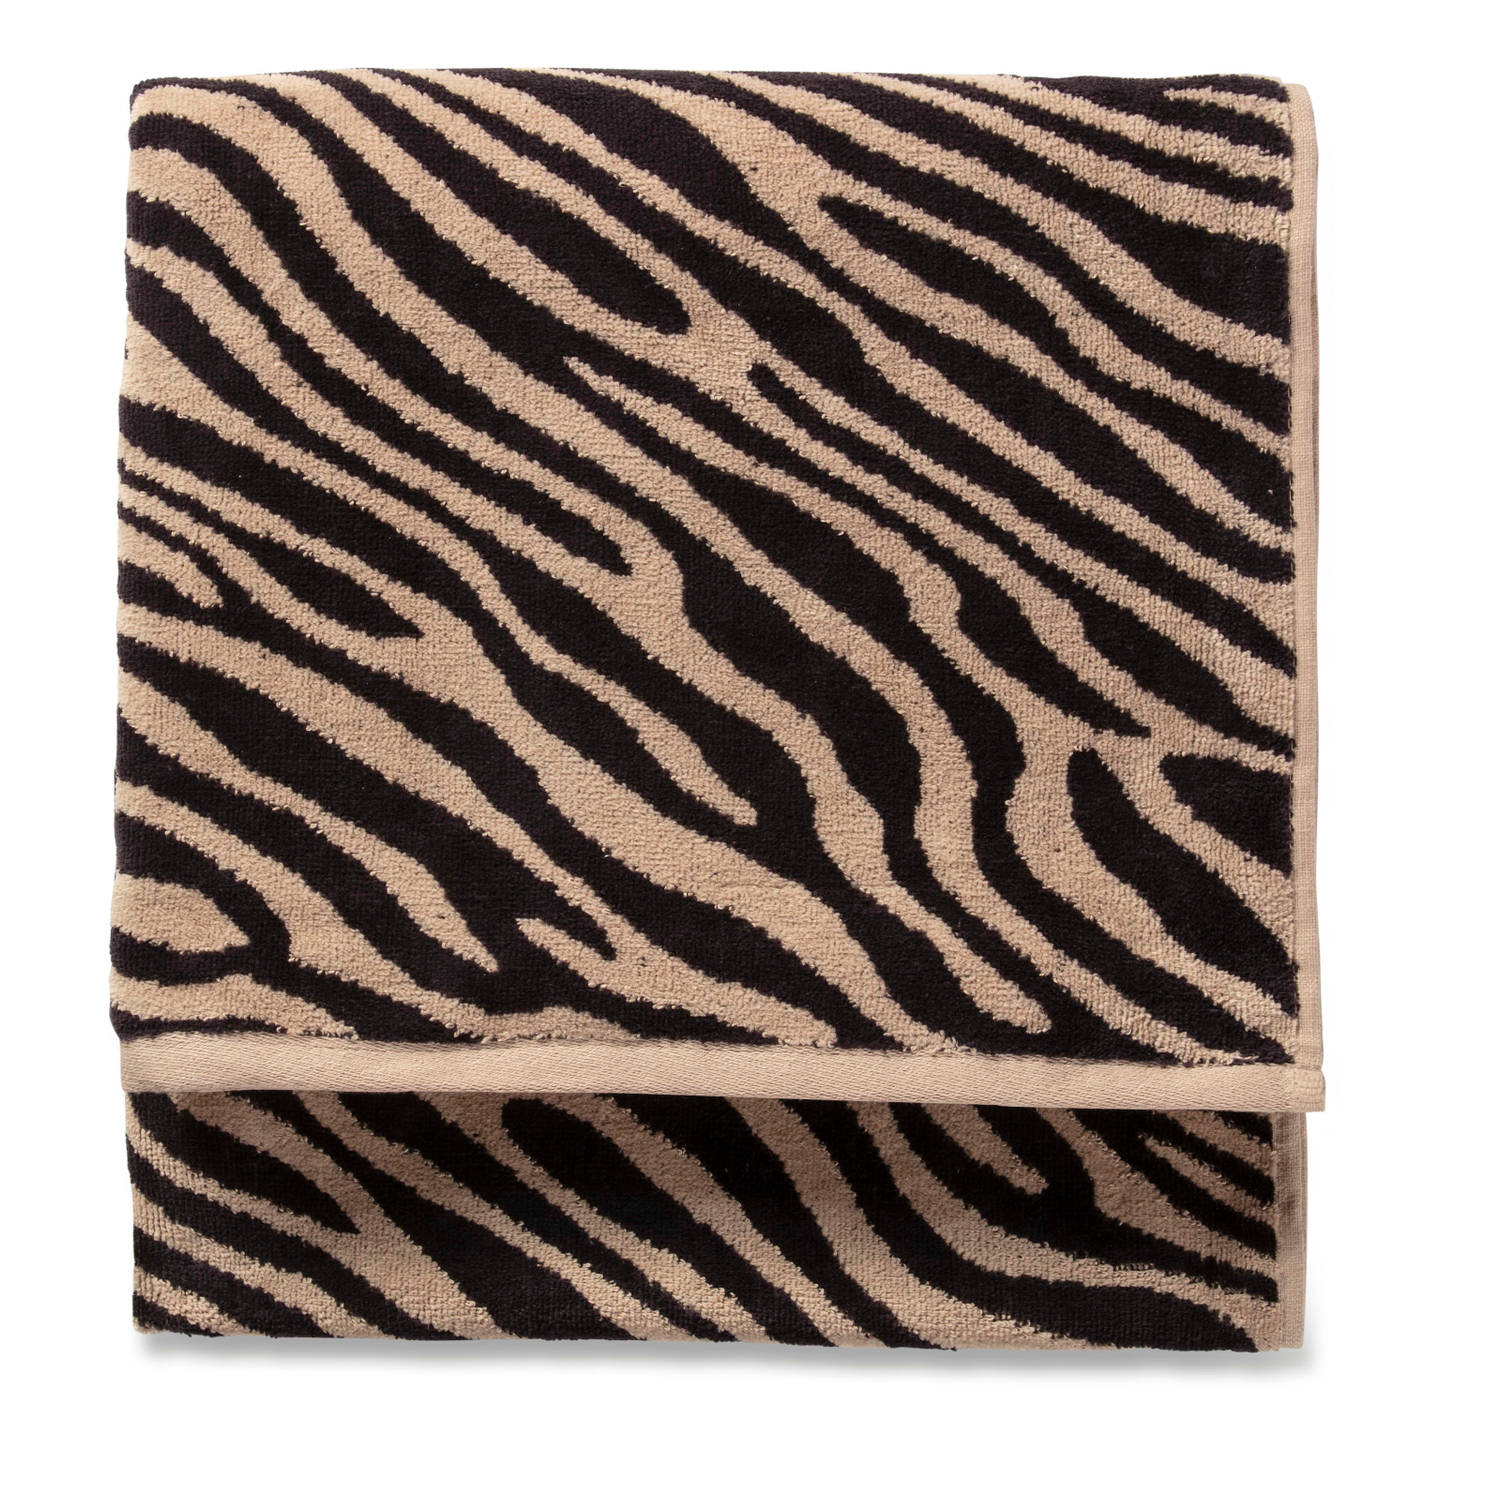 Alvast Zelden neutrale Blokker handdoek zebra - beige/zwart - 70x140 cm | Blokker